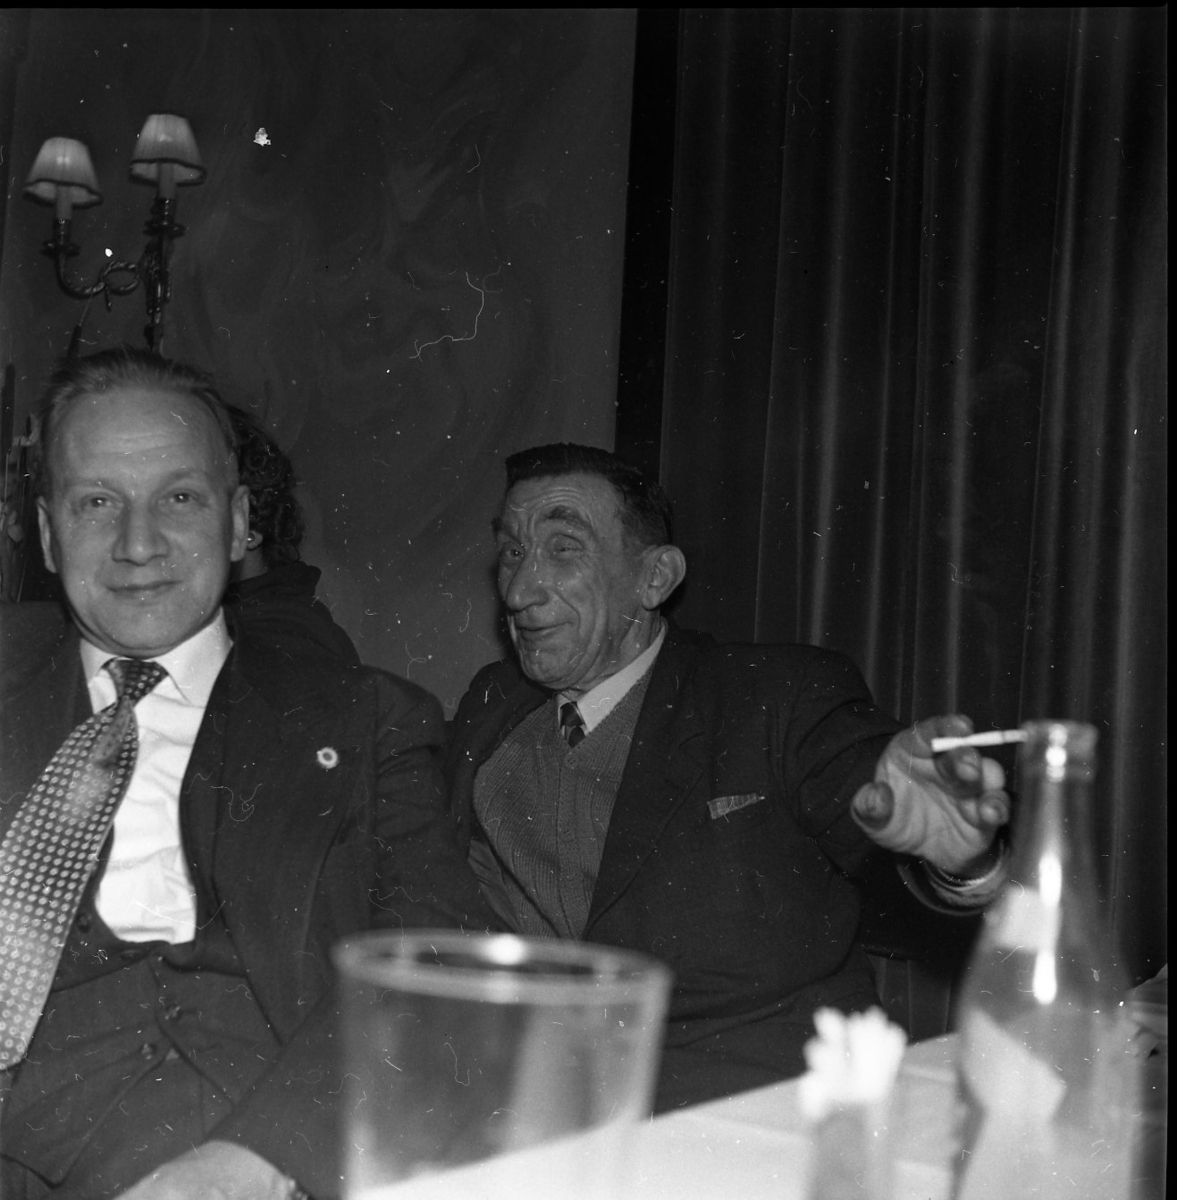 Två män, sannolikt på en restaurang. Ett glas och flaska i klarglas i förgrunden. Mannen närmast i bild med prickig slips heter Nils Johansson. Bakom honom sitter Gustav Larsson med ett plirigt leende och cigarett i handen.